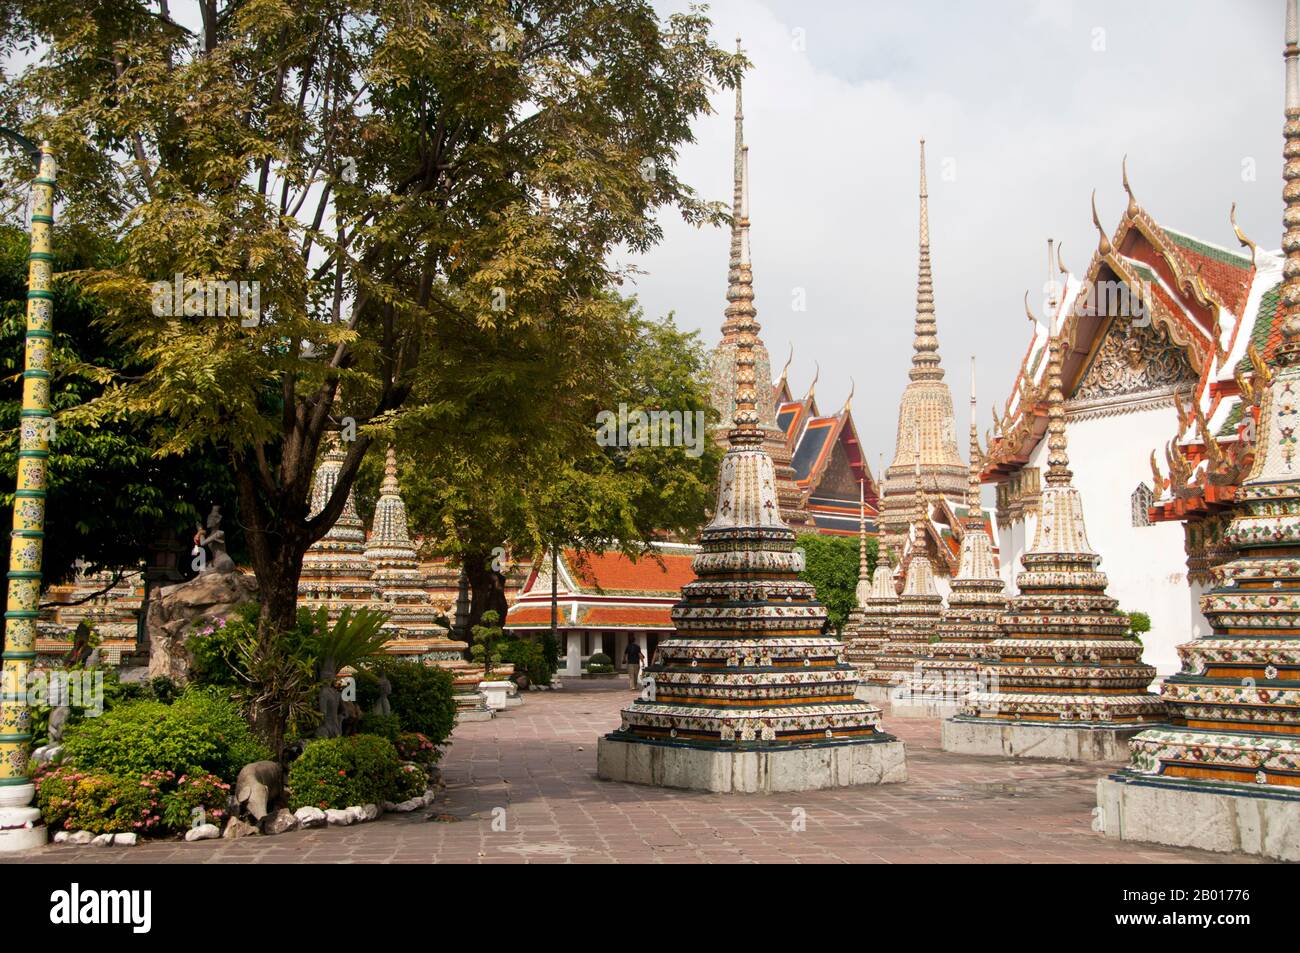 Thaïlande: Chedis et petit pavillon de massage, Wat Pho, Bangkok.Construit au 16th siècle, Wat Pho est le plus ancien temple de Bangkok.Le roi Rama I de la dynastie Chakri (1736—1809) reconstruit le temple en 1780s.Officiellement appelé Wat Phra Chetuphon, c'est l'un des temples bouddhistes les plus connus de Bangkok et est aujourd'hui une attraction touristique majeure, situé directement au sud du Grand Palais.Wat Pho est célèbre pour son Bouddha couché et renommé comme la maison du massage thaïlandais traditionnel. Banque D'Images